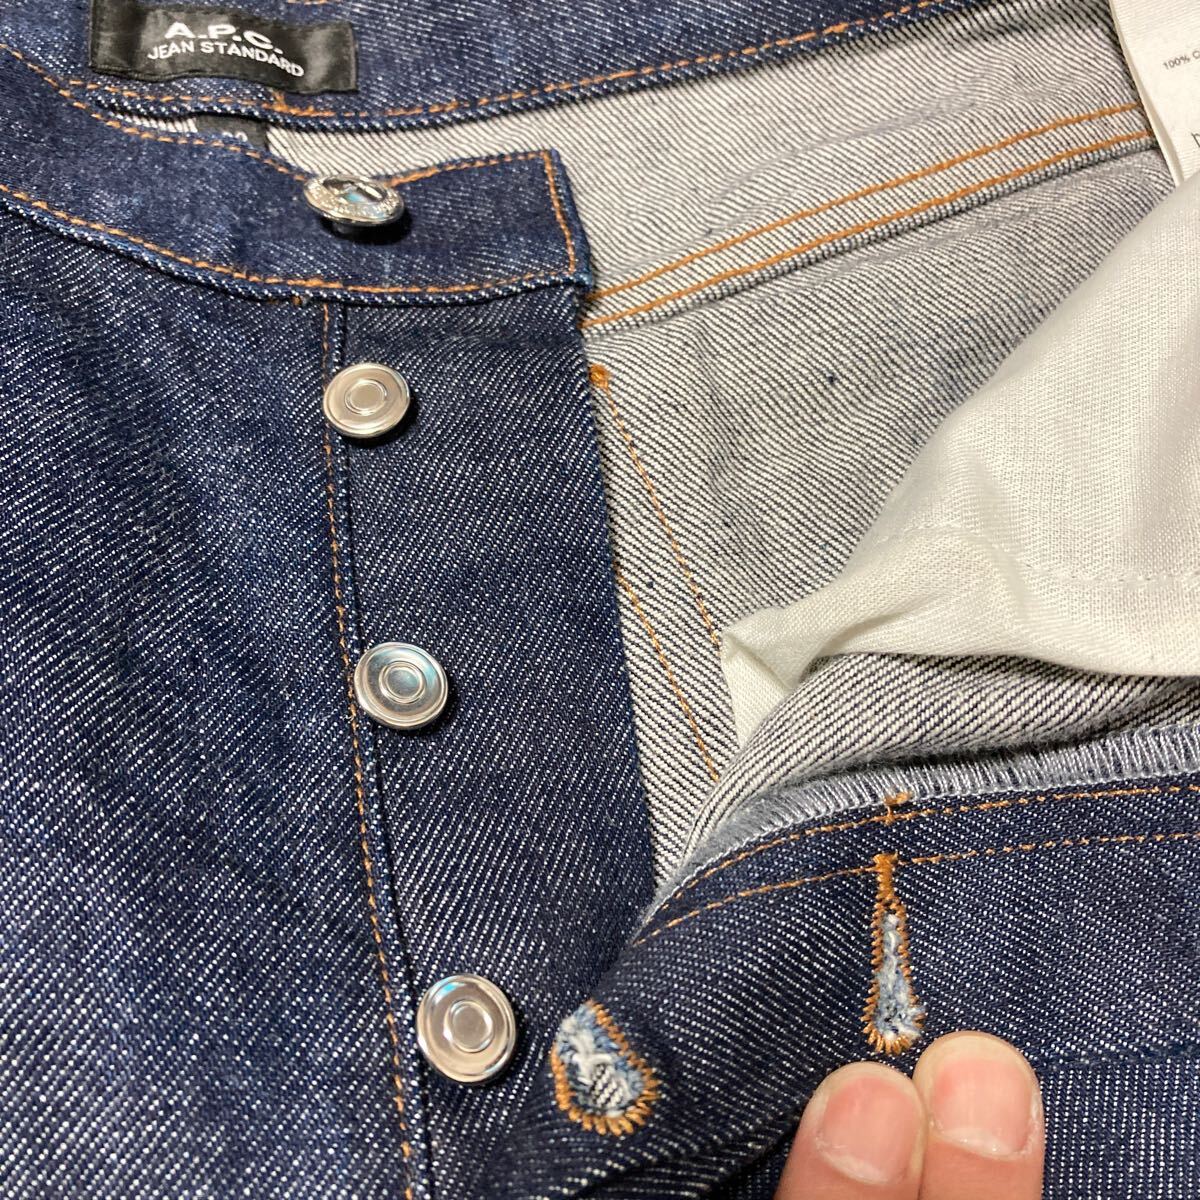 [ прекрасный товар ]A.P.C. JEAN STANDARD A.P.C. стандартный rigid Denim брюки джинсы индиго красный уголок W32 темно синий 